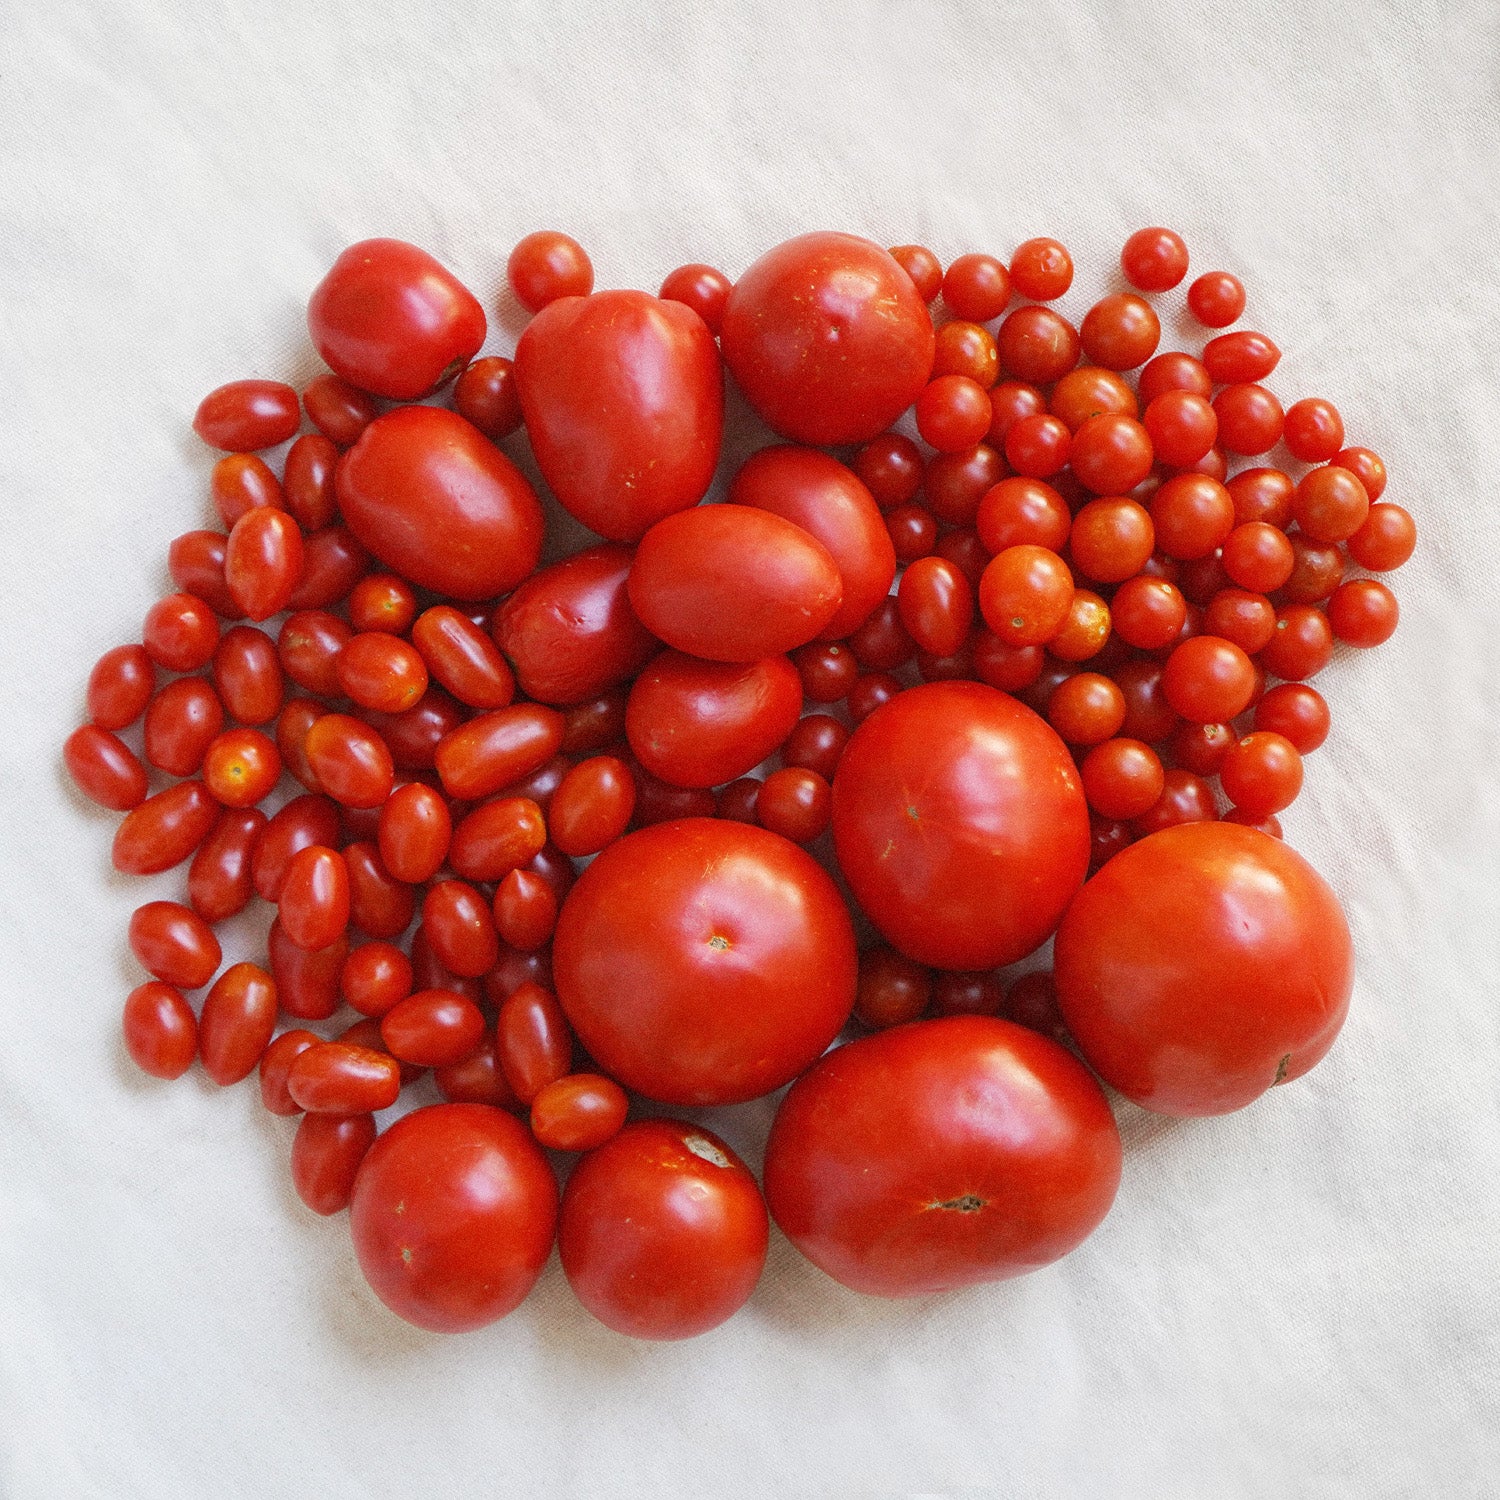 Surtido de tomates ecológicos